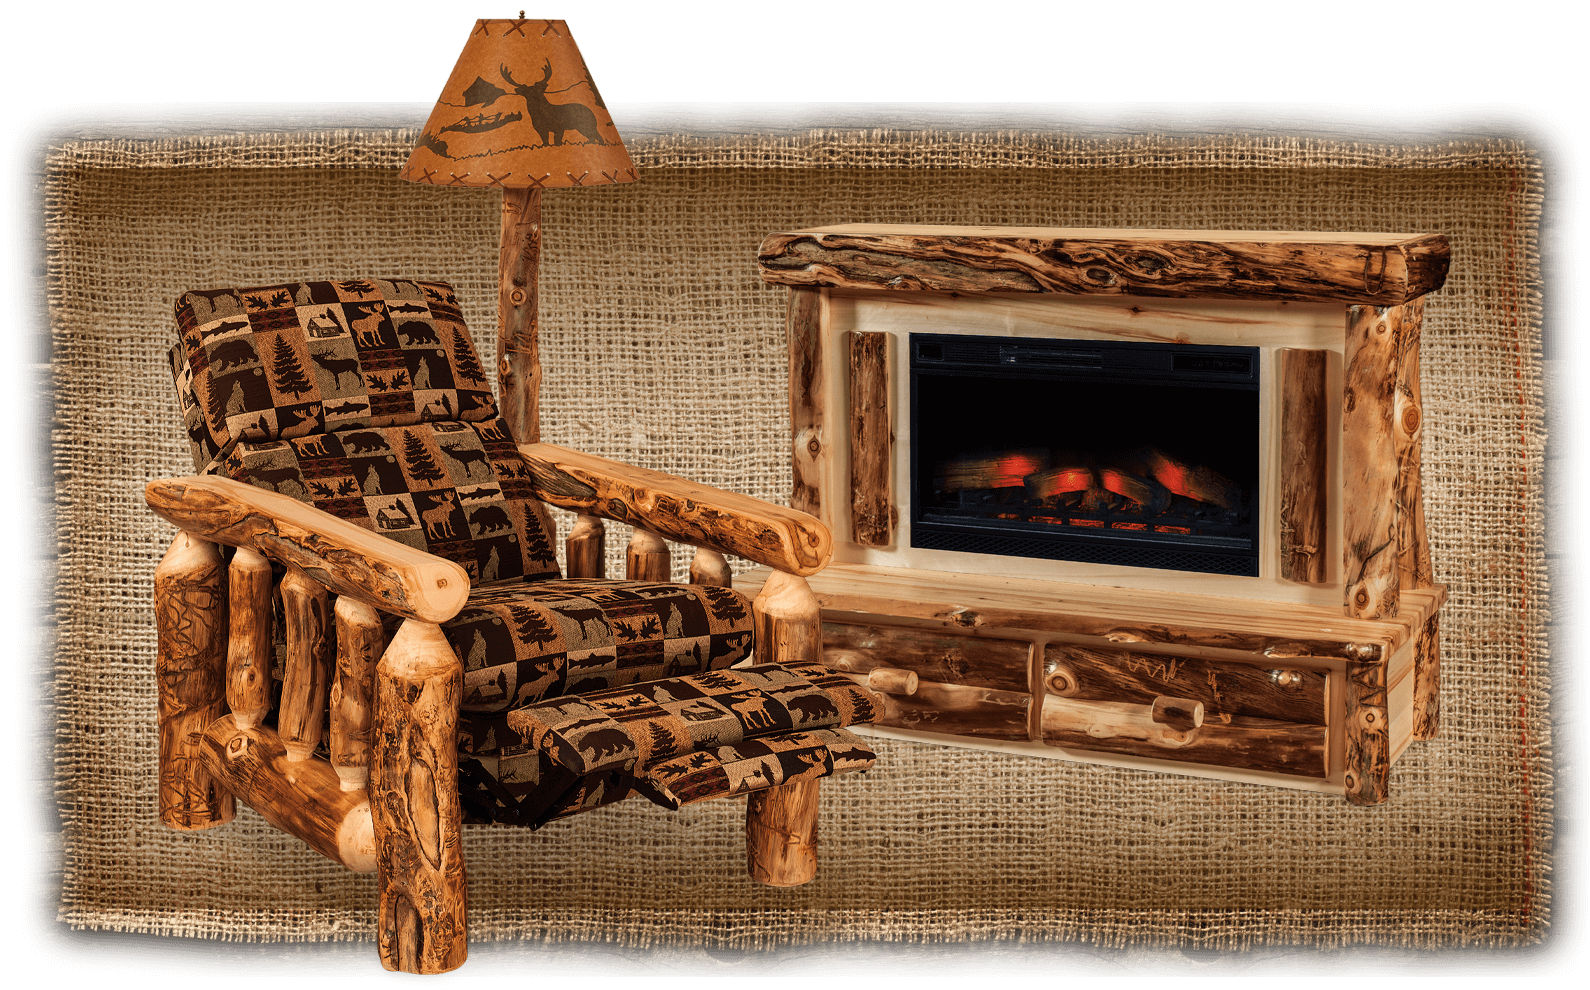 Fireside Log Furniture Rustic Dining Room Set